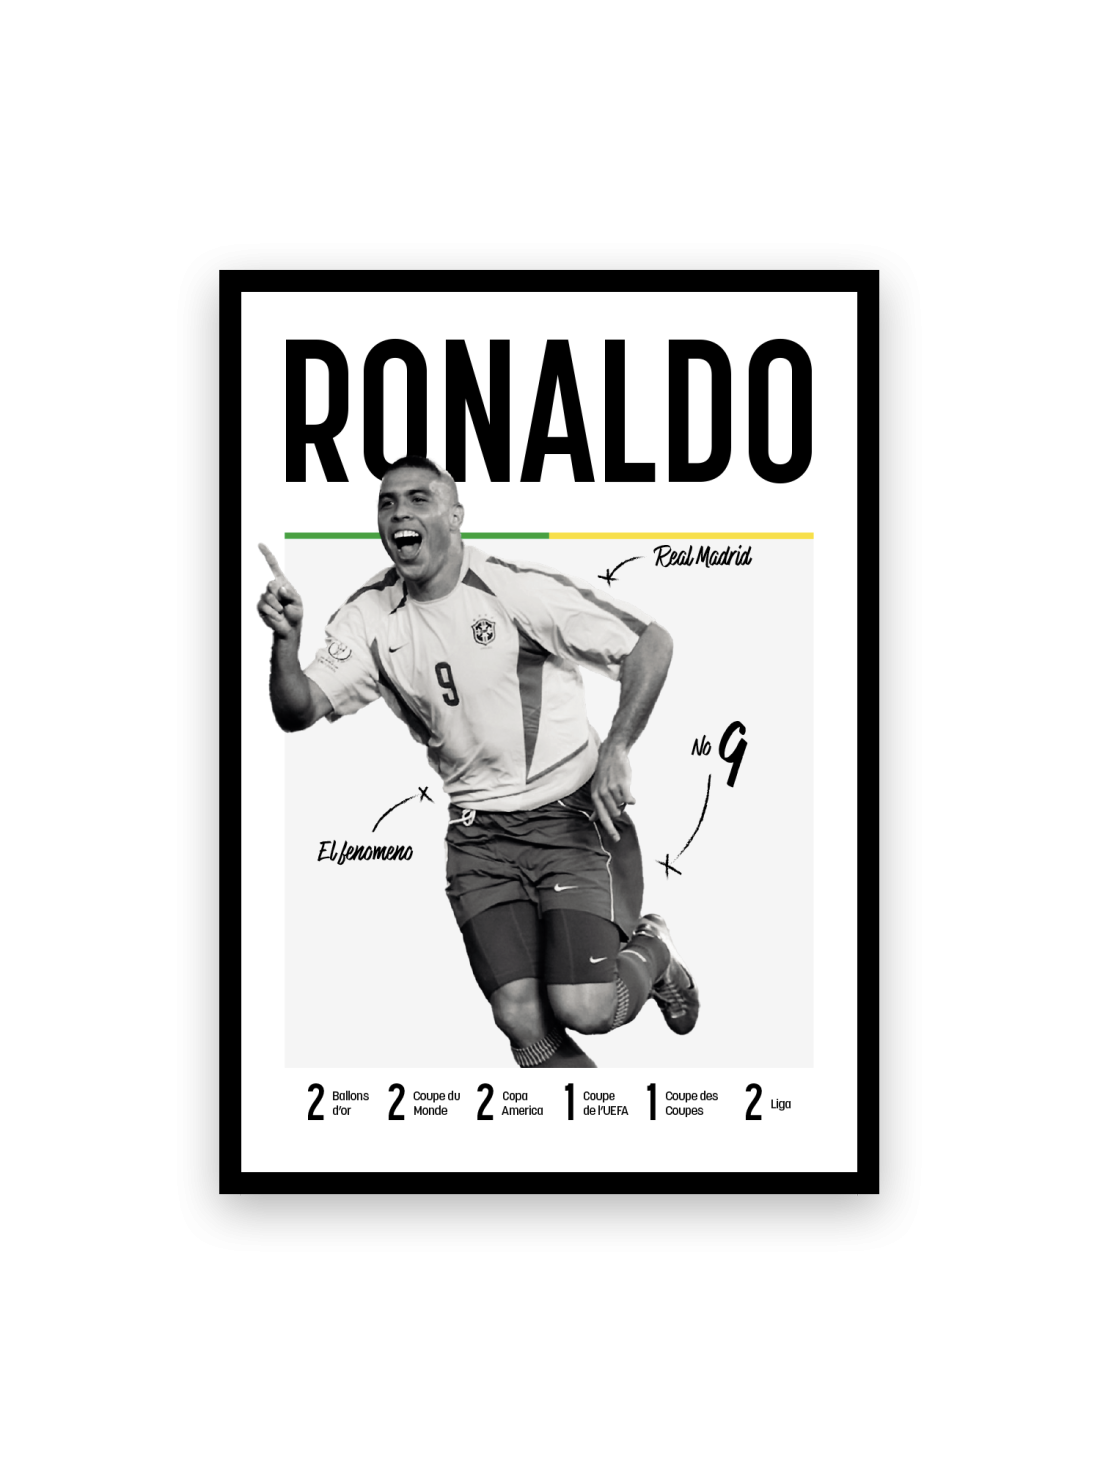 Ronaldo Nazario - Les légendes du Foot